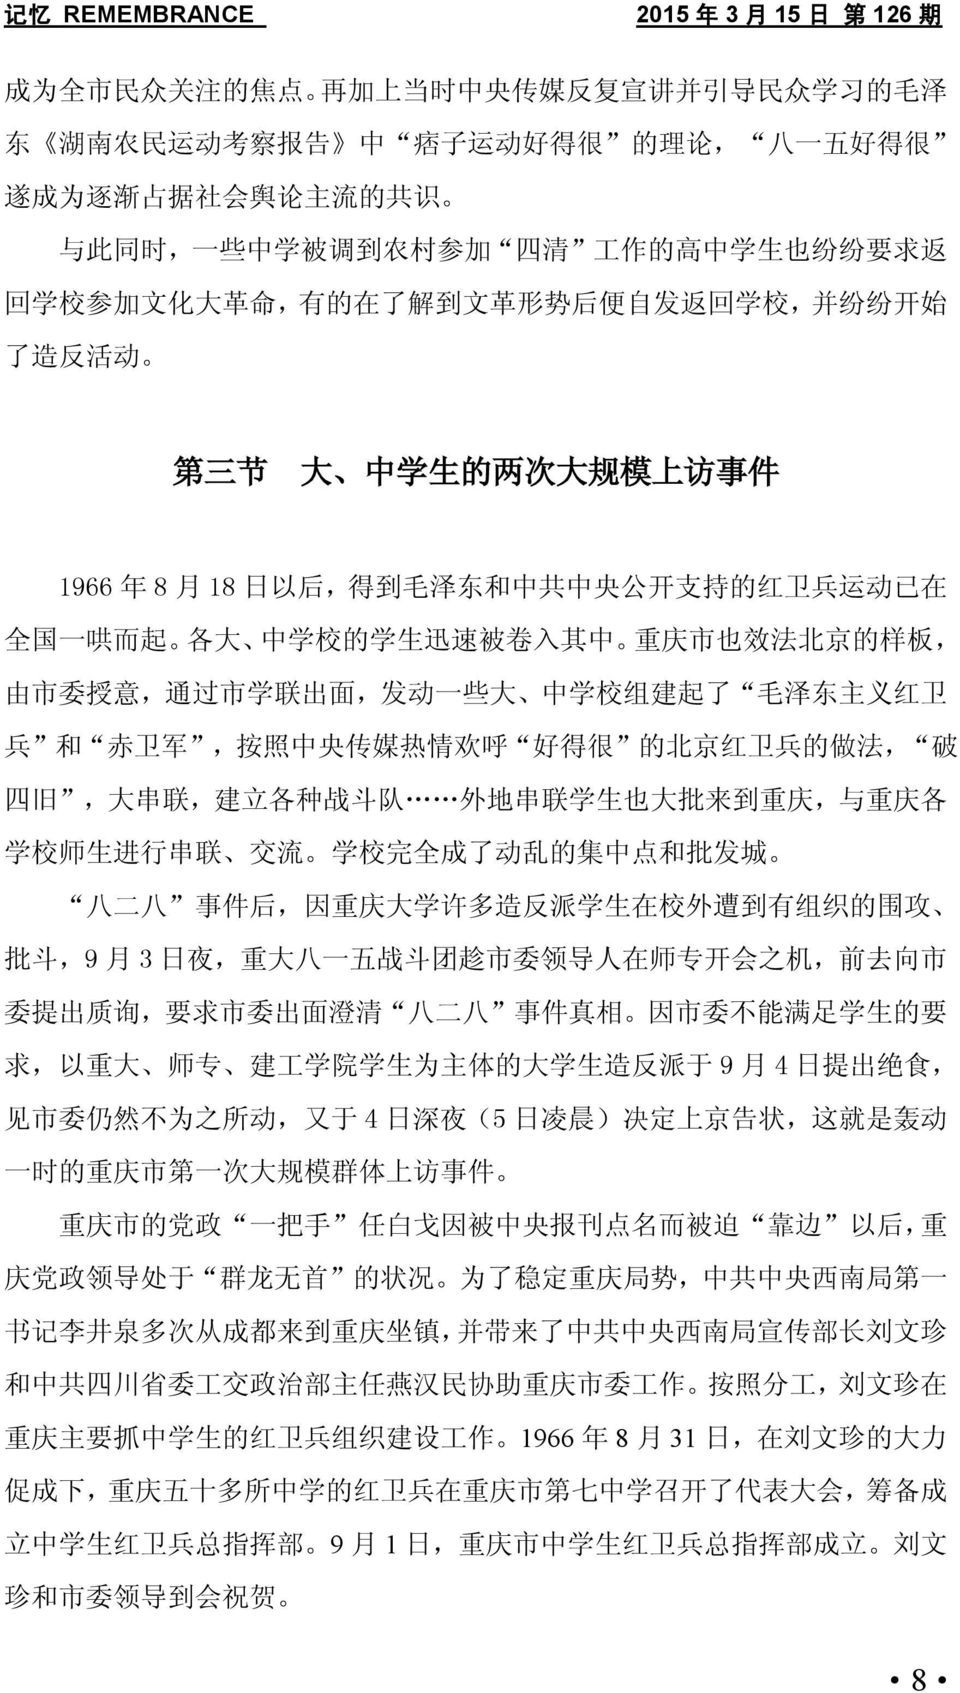 一 哄 而 起 各 大 中 学 校 的 学 生 迅 速 被 卷 入 其 中 重 庆 市 也 效 法 北 京 的 样 板, 由 市 委 授 意, 通 过 市 学 联 出 面, 发 动 一 些 大 中 学 校 组 建 起 了 毛 泽 东 主 义 红 卫 兵 和 赤 卫 军, 按 照 中 央 传 媒 热 情 欢 呼 好 得 很 的 北 京 红 卫 兵 的 做 法, 破 四 旧, 大 串 联, 建 立